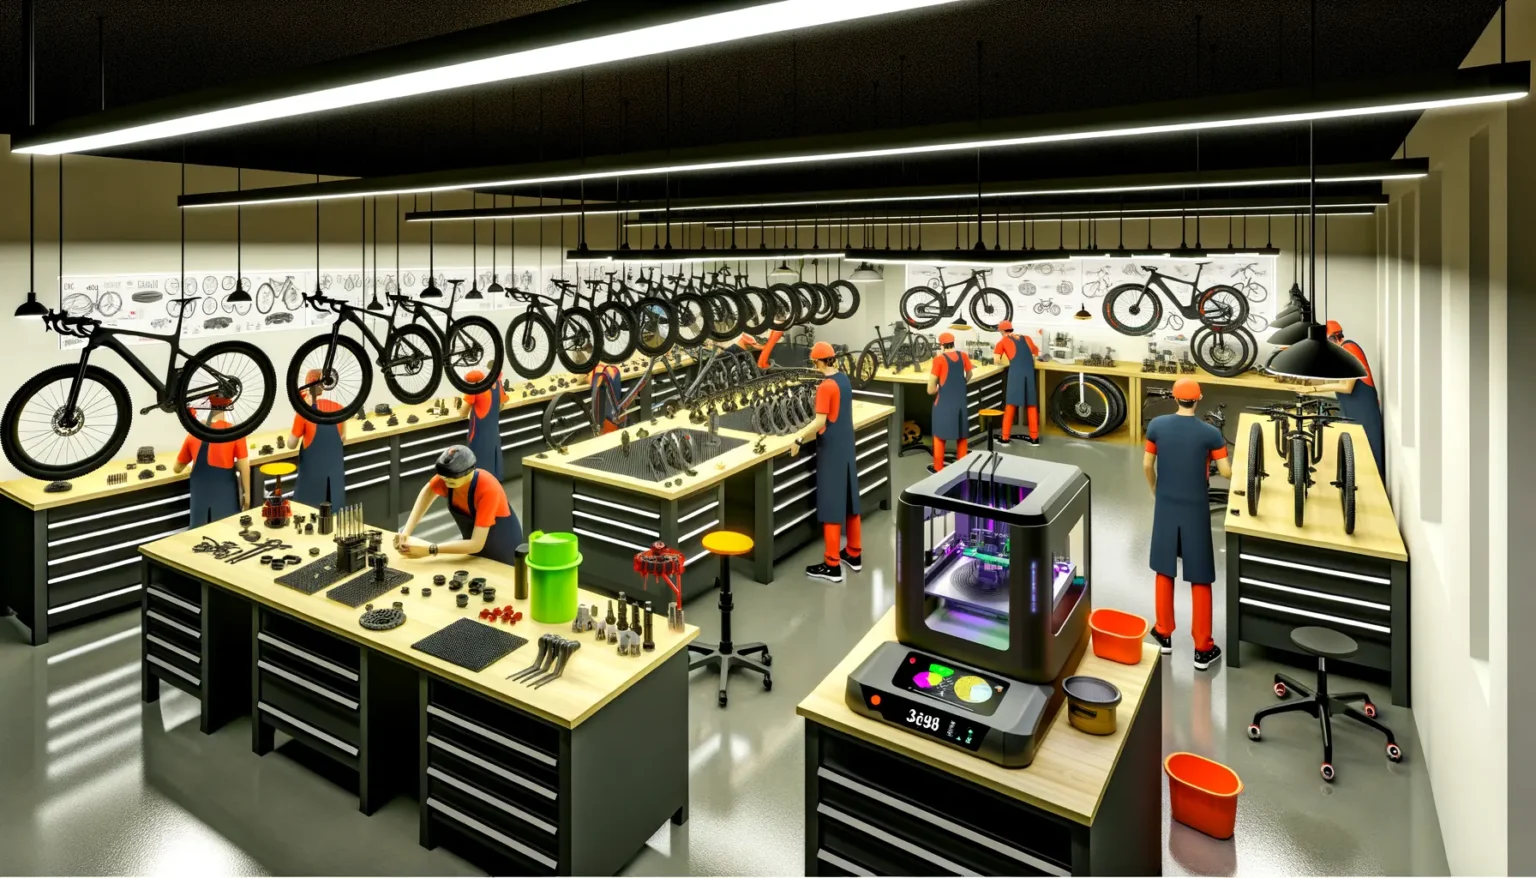 Ein modernes Fahrradwerkstatt-Interieur mit mehreren Arbeitern in orangen Overalls und Sicherheitshelmen, die mit verschiedenen Fahrradteilen und Werkzeugen arbeiten. Fahrräder sind an der Wand aufgehängt und auf Werkbänken aufgestellt, während im Vordergrund ein 3D-Drucker zu sehen ist. Das Ambiente wird durch helles Kunstlicht und eine große Wand mit Fahrradkonstruktionszeichnungen hervorgehoben.